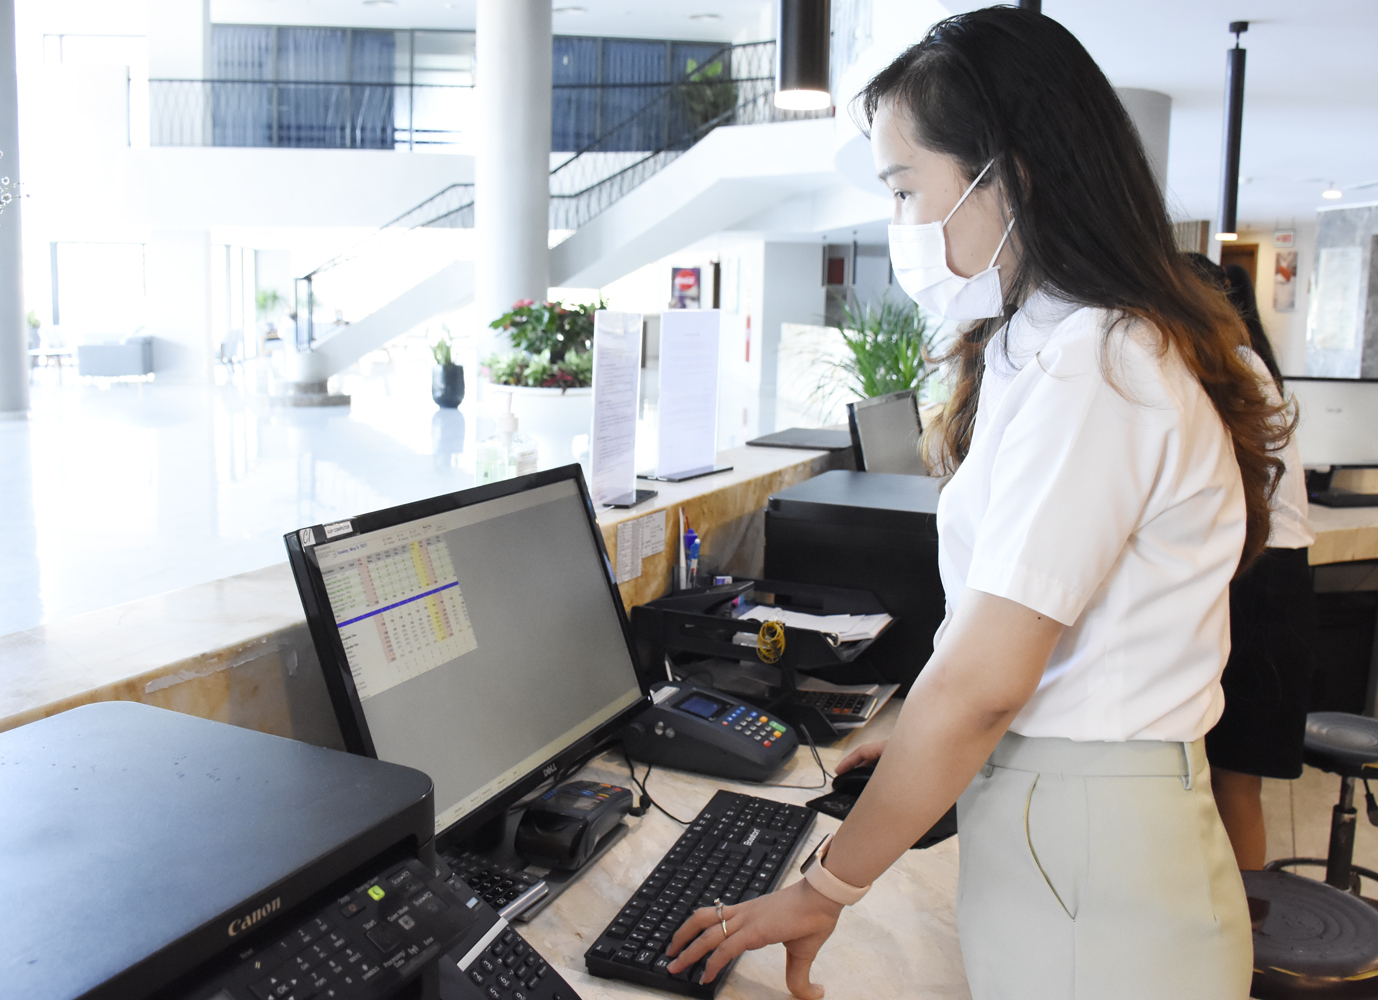 Bà Rịa - Vũng Tàu: Xây dựng phần mềm quản lý lưu trú trực tuyến